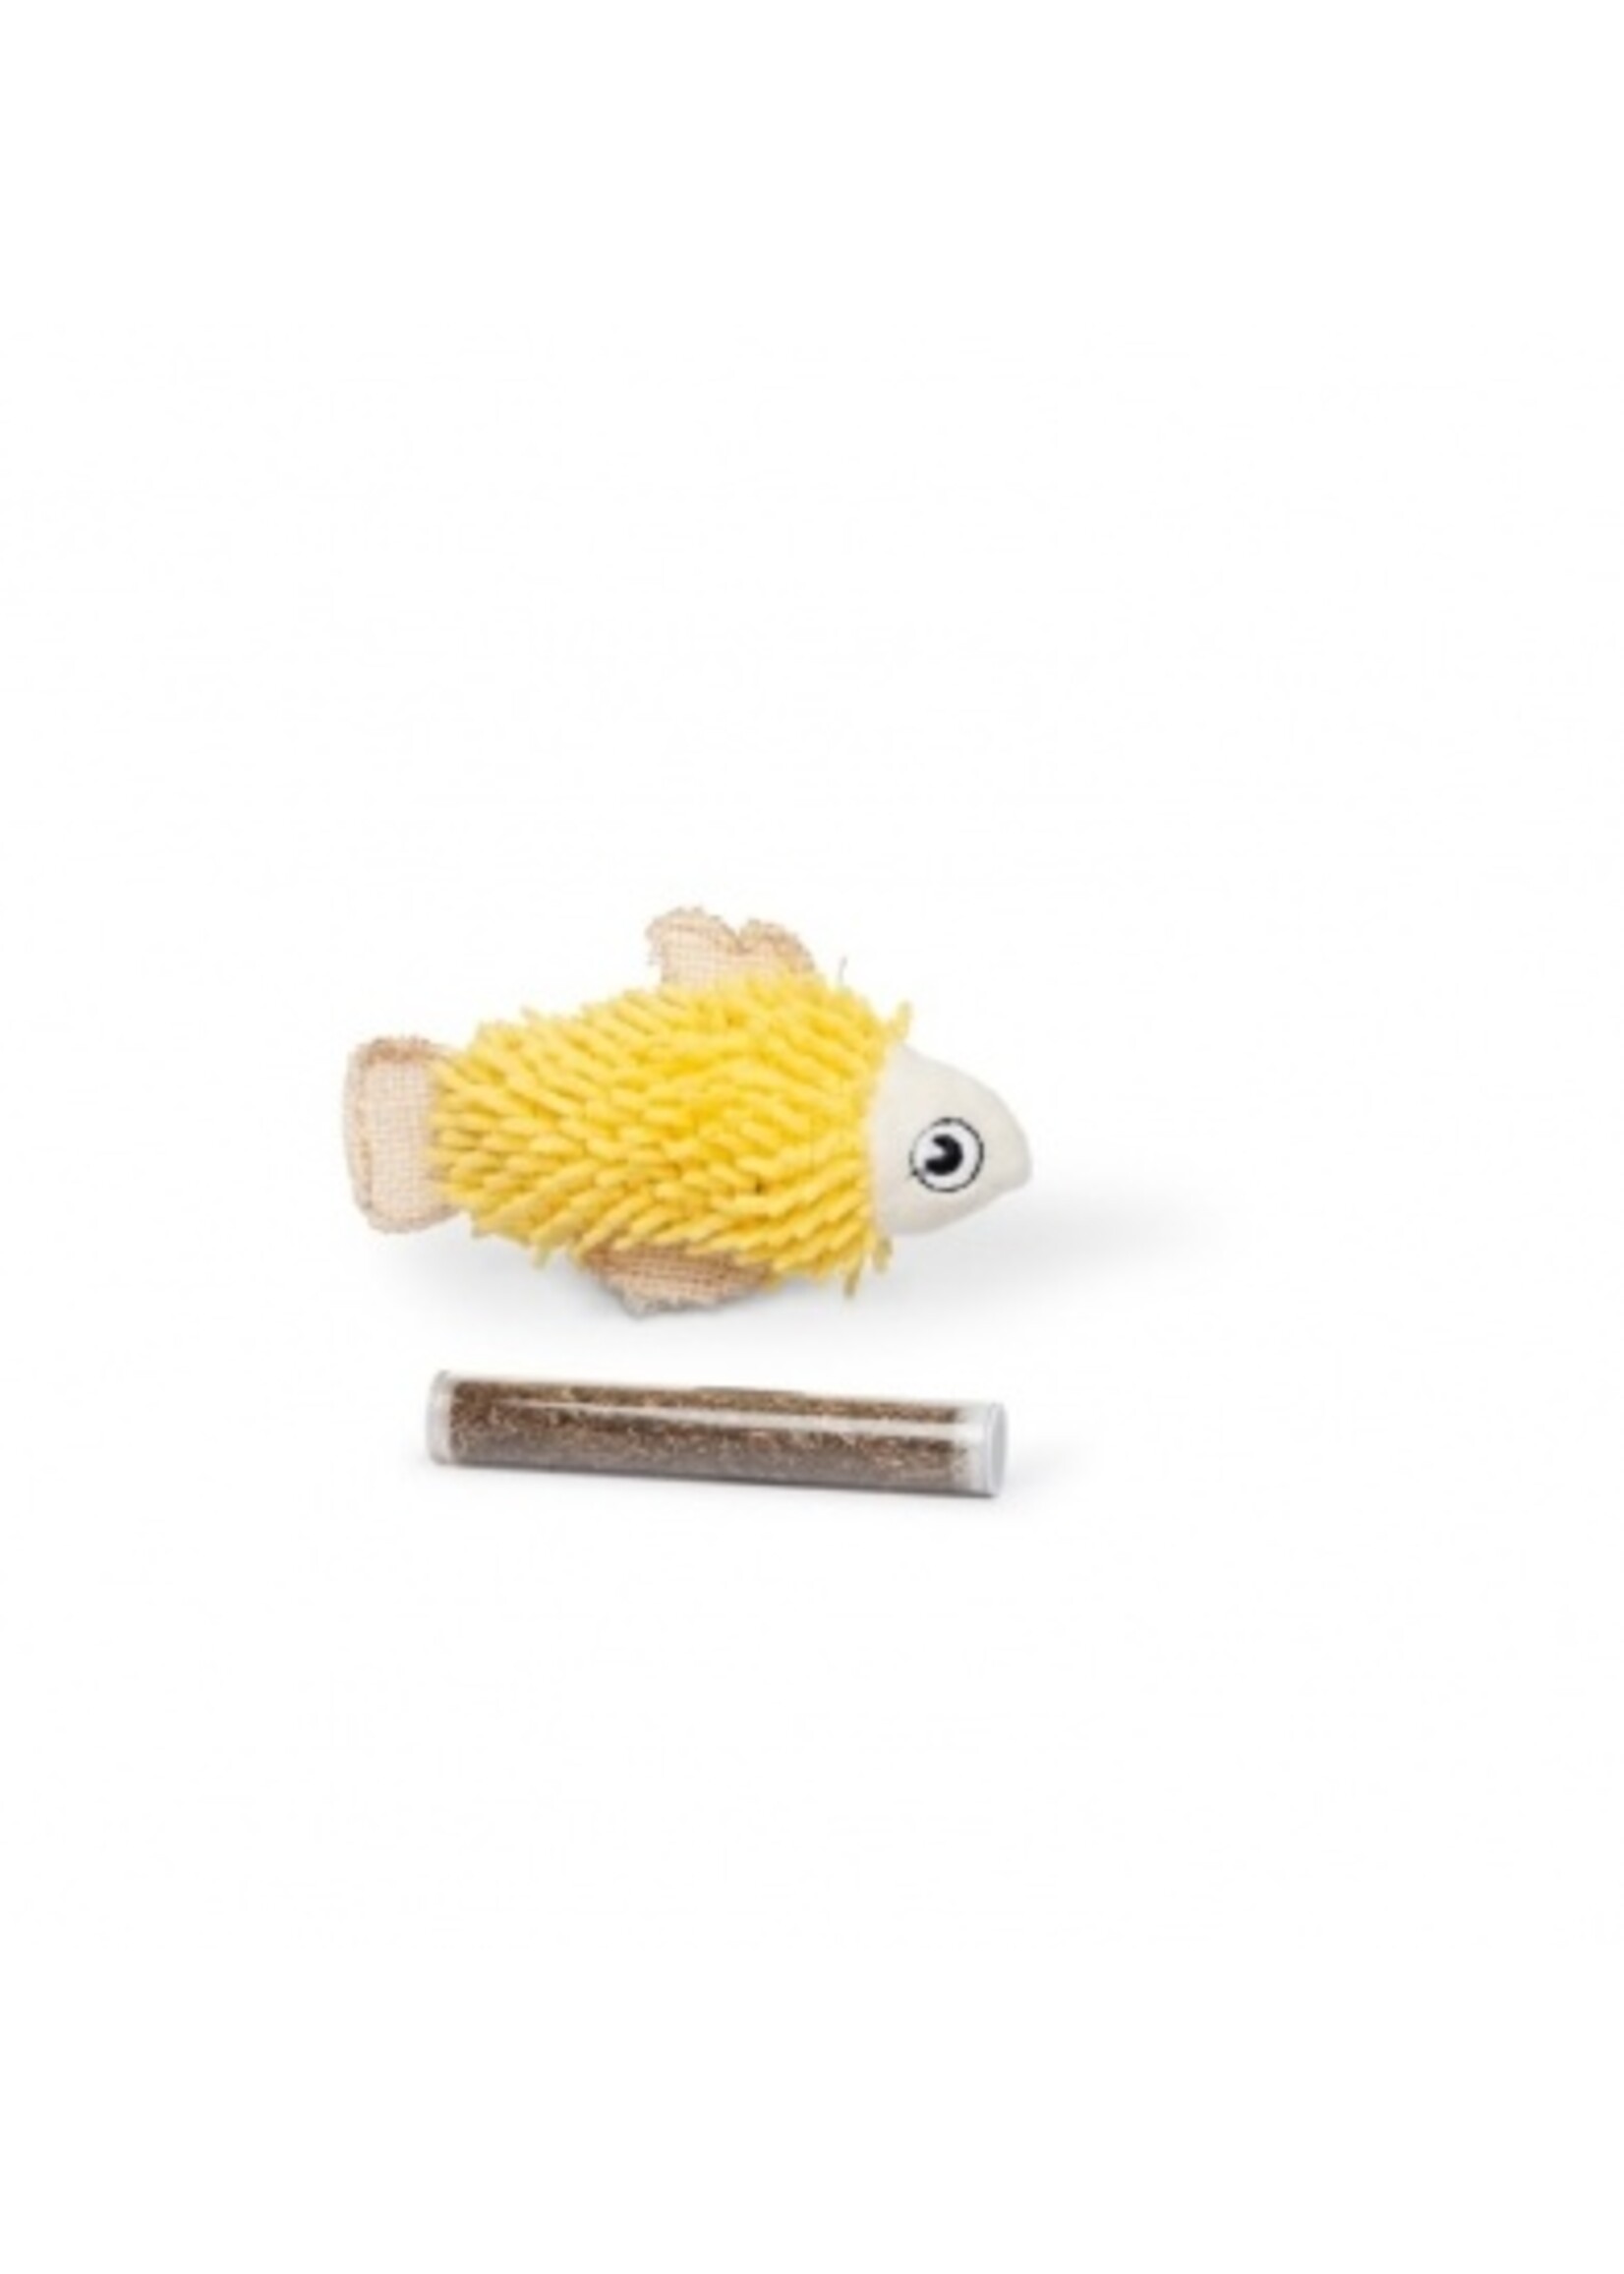 Budz Budz Yellow Fish Cat Toy w/ Catnip Pocket - 1 Tube 4.5"